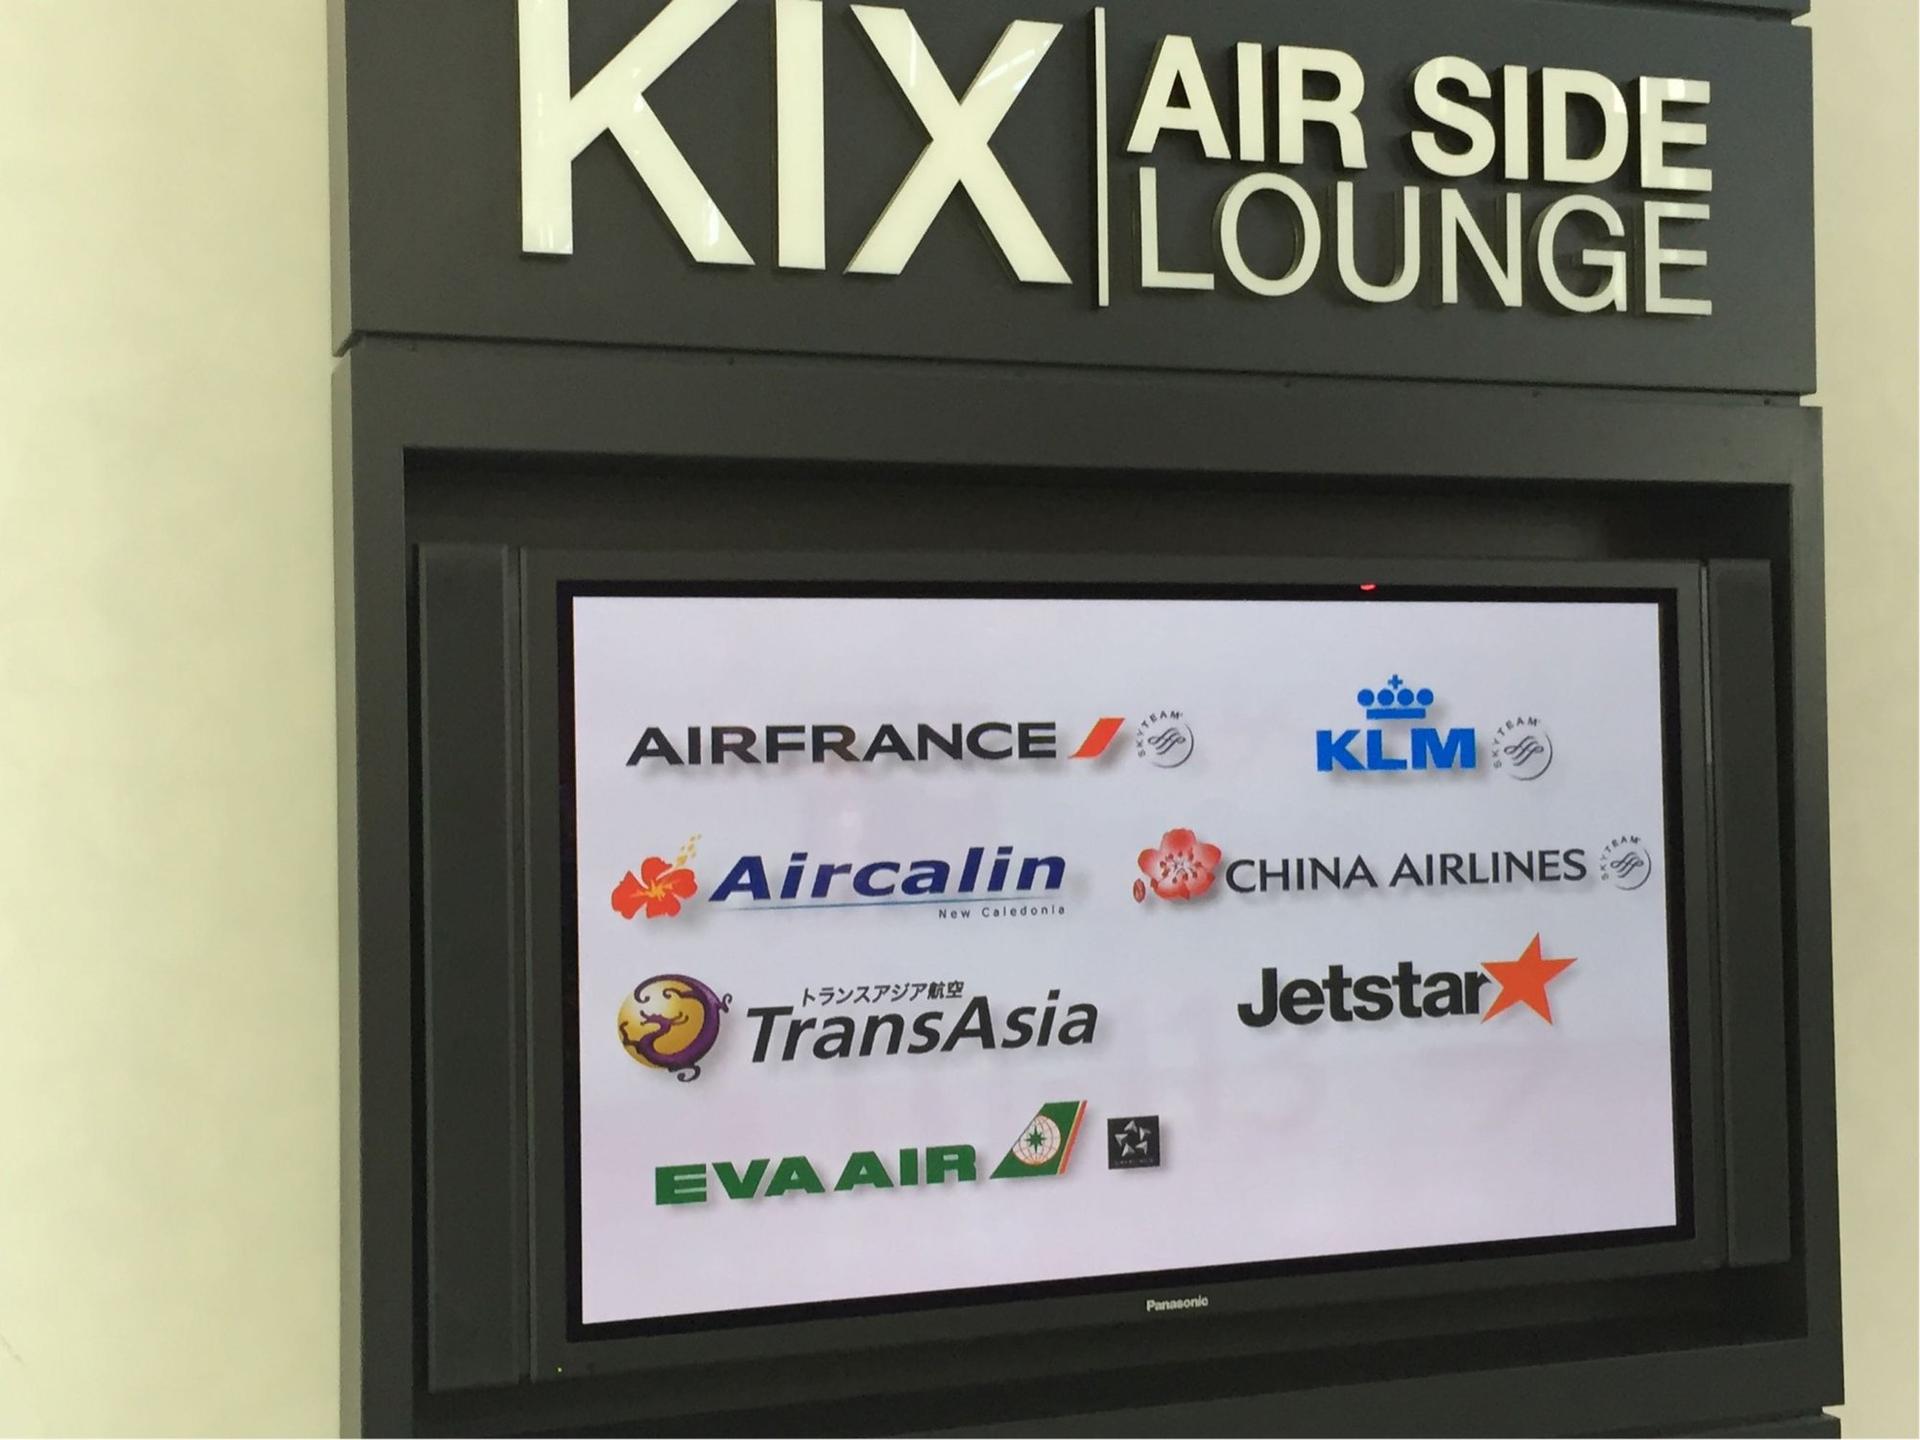 KIX Airside Lounge image 3 of 3